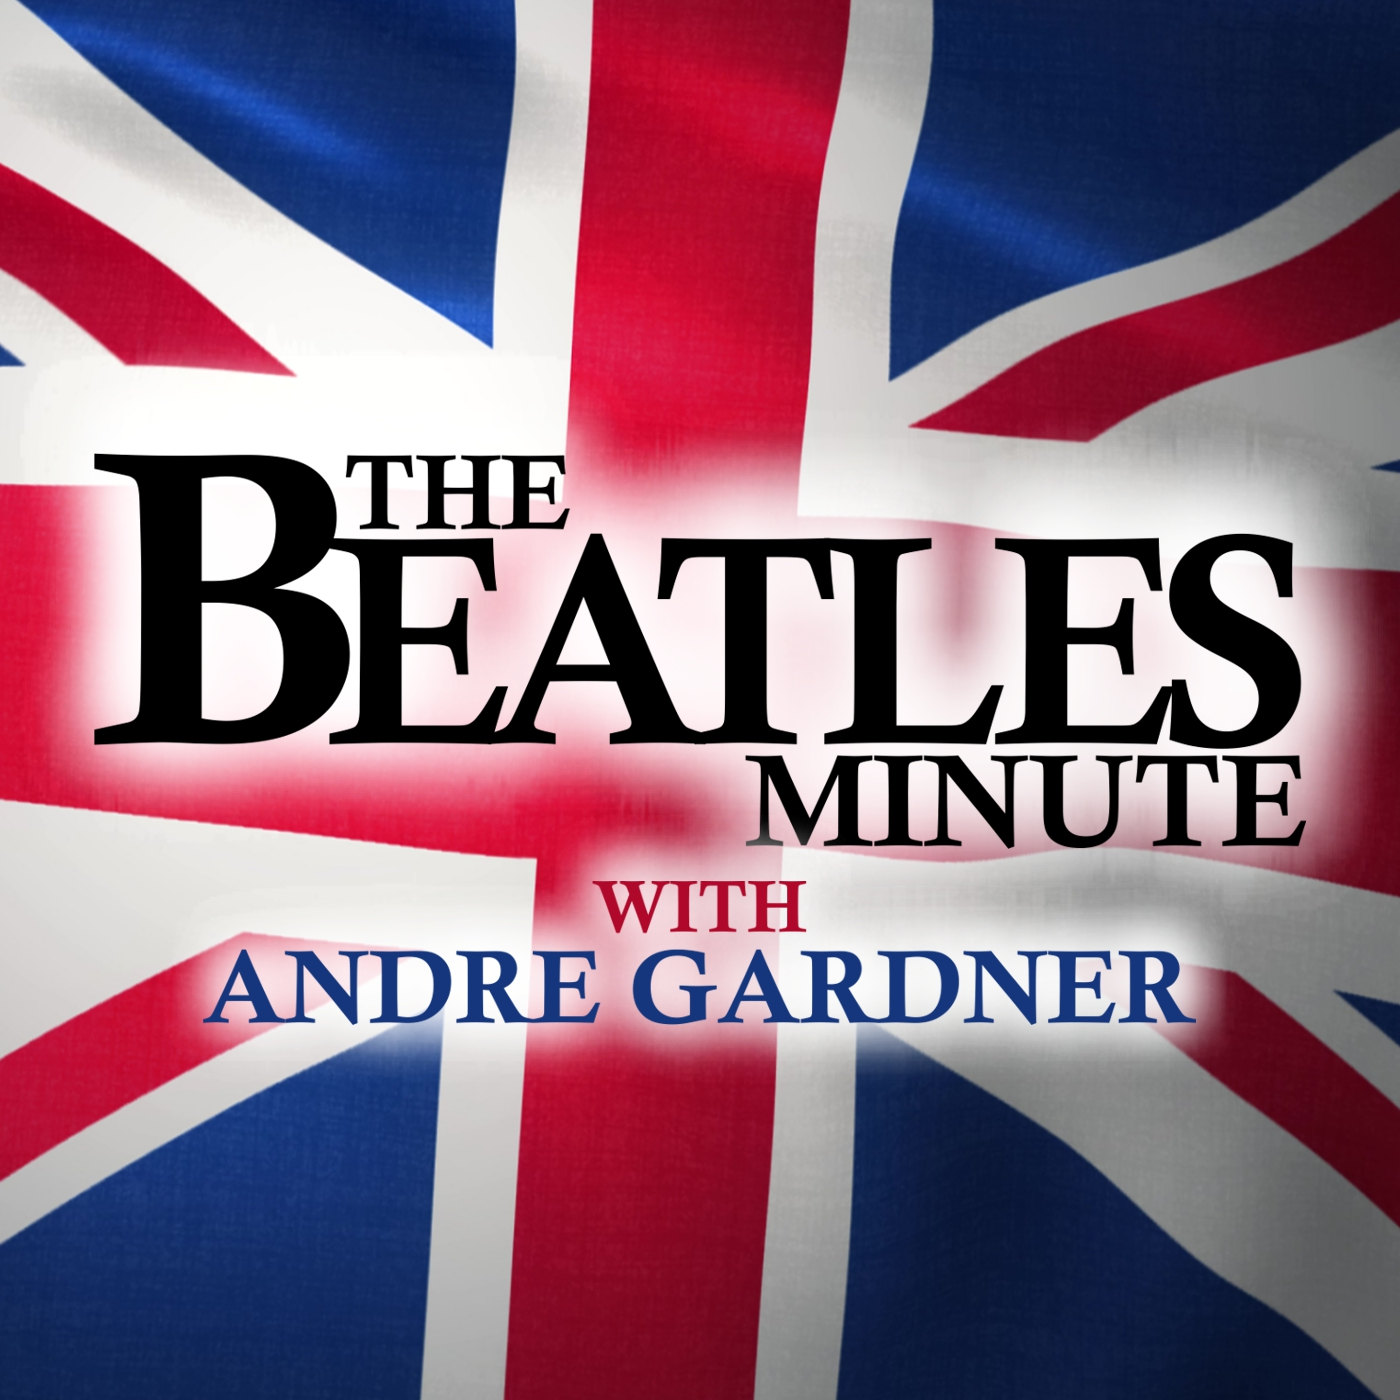 Beatles Minute - week of September 16, 2019